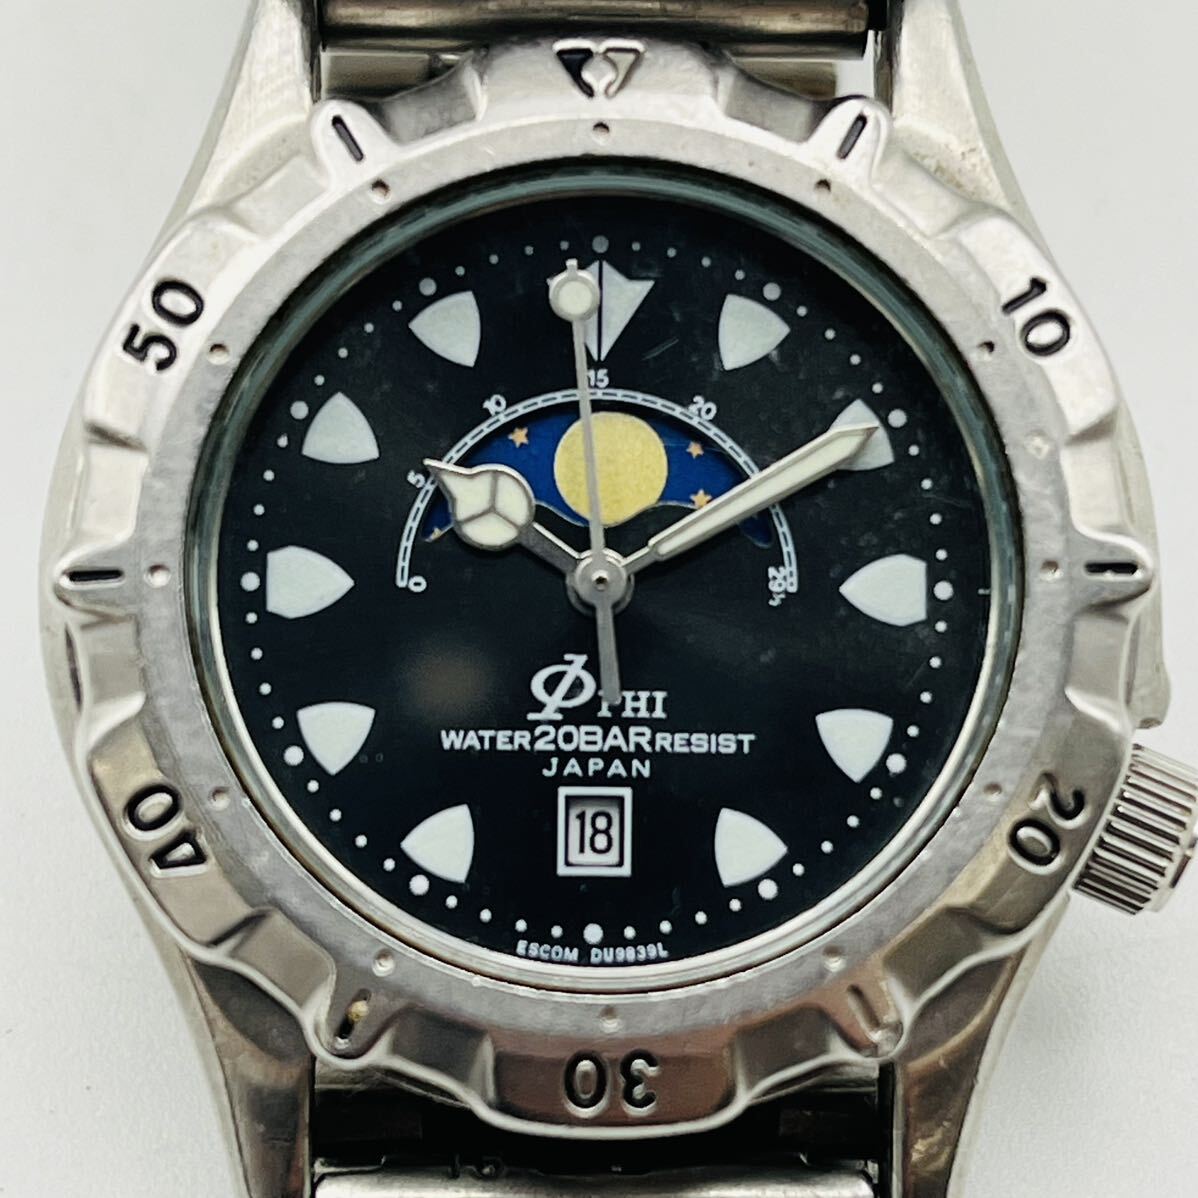 177 ESCOM QUARTZ PHI メンズ腕時計 腕時計 時計 クオーツ クォーツ 20BAR 3針 カレンダー TI_画像2